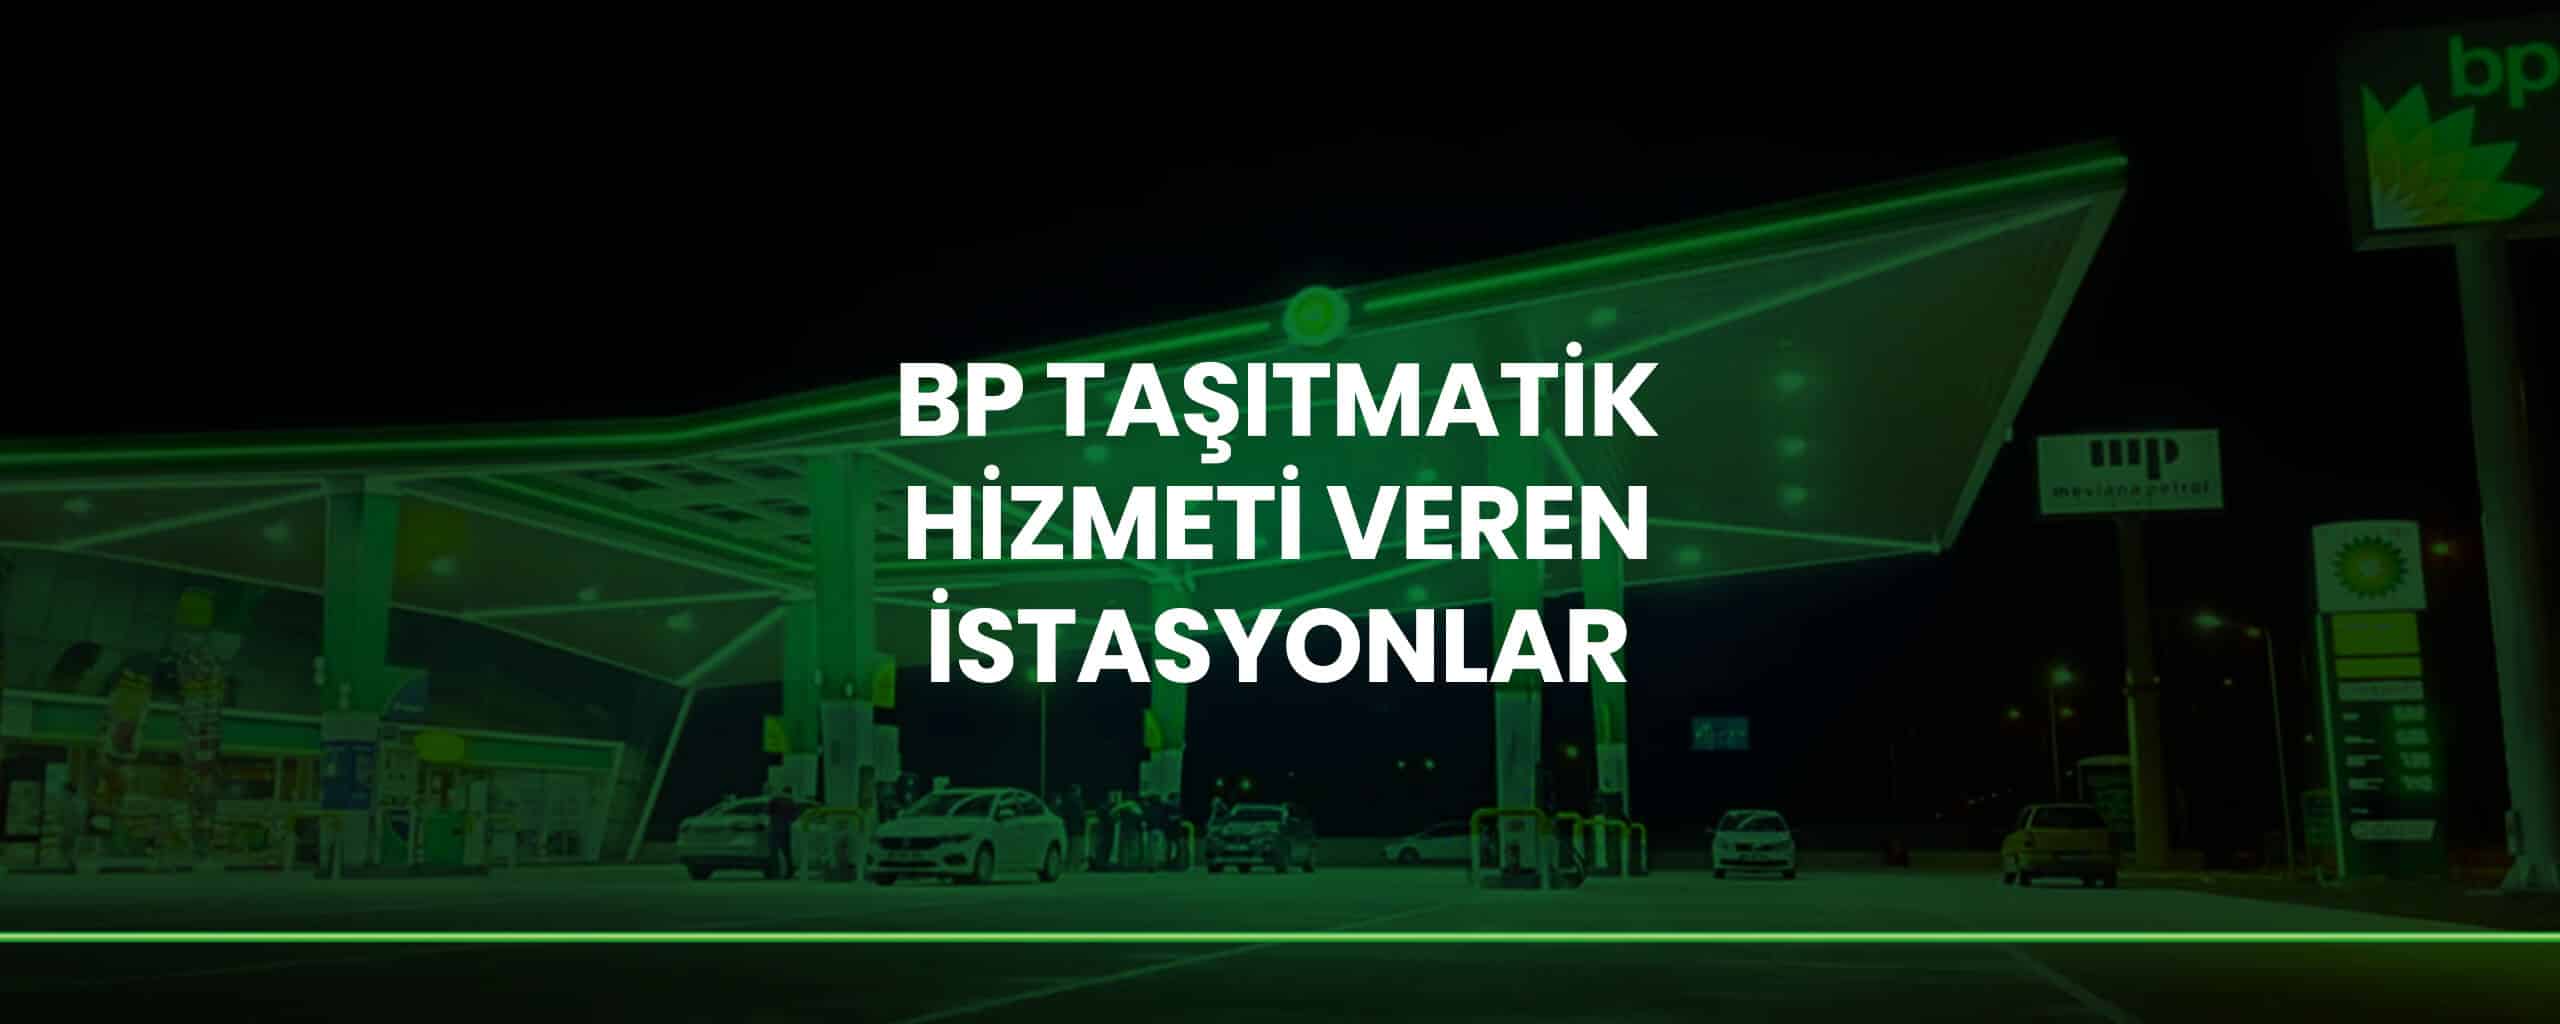 BP Taşıtmatik Hizmeti Veren İstasyonlar